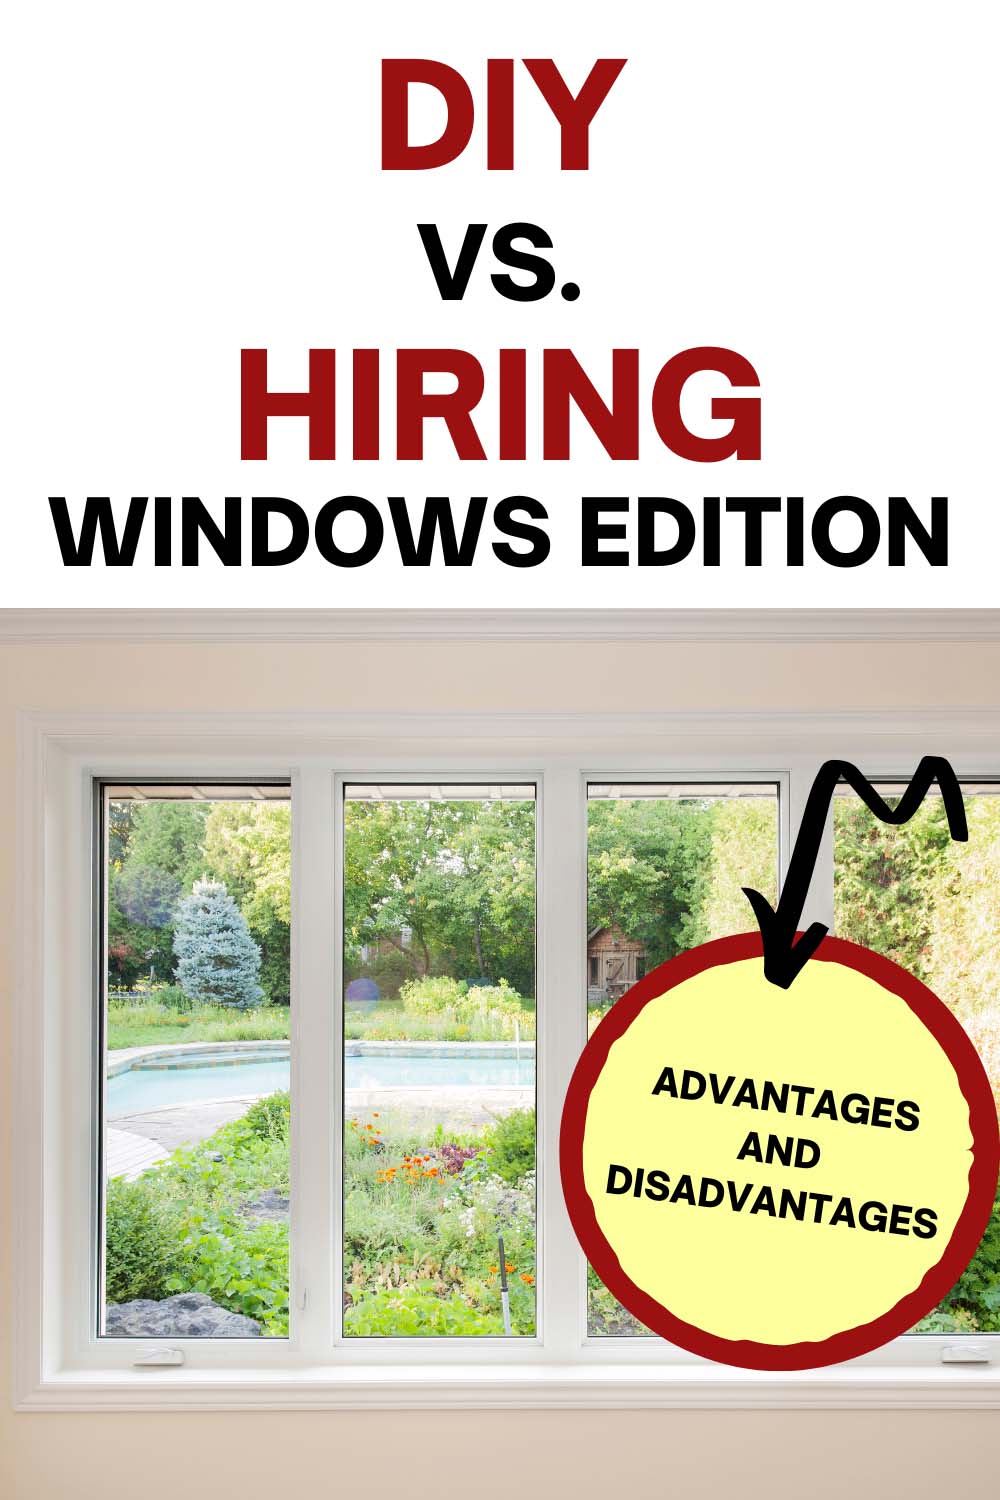 DIY vs Hiring Windows